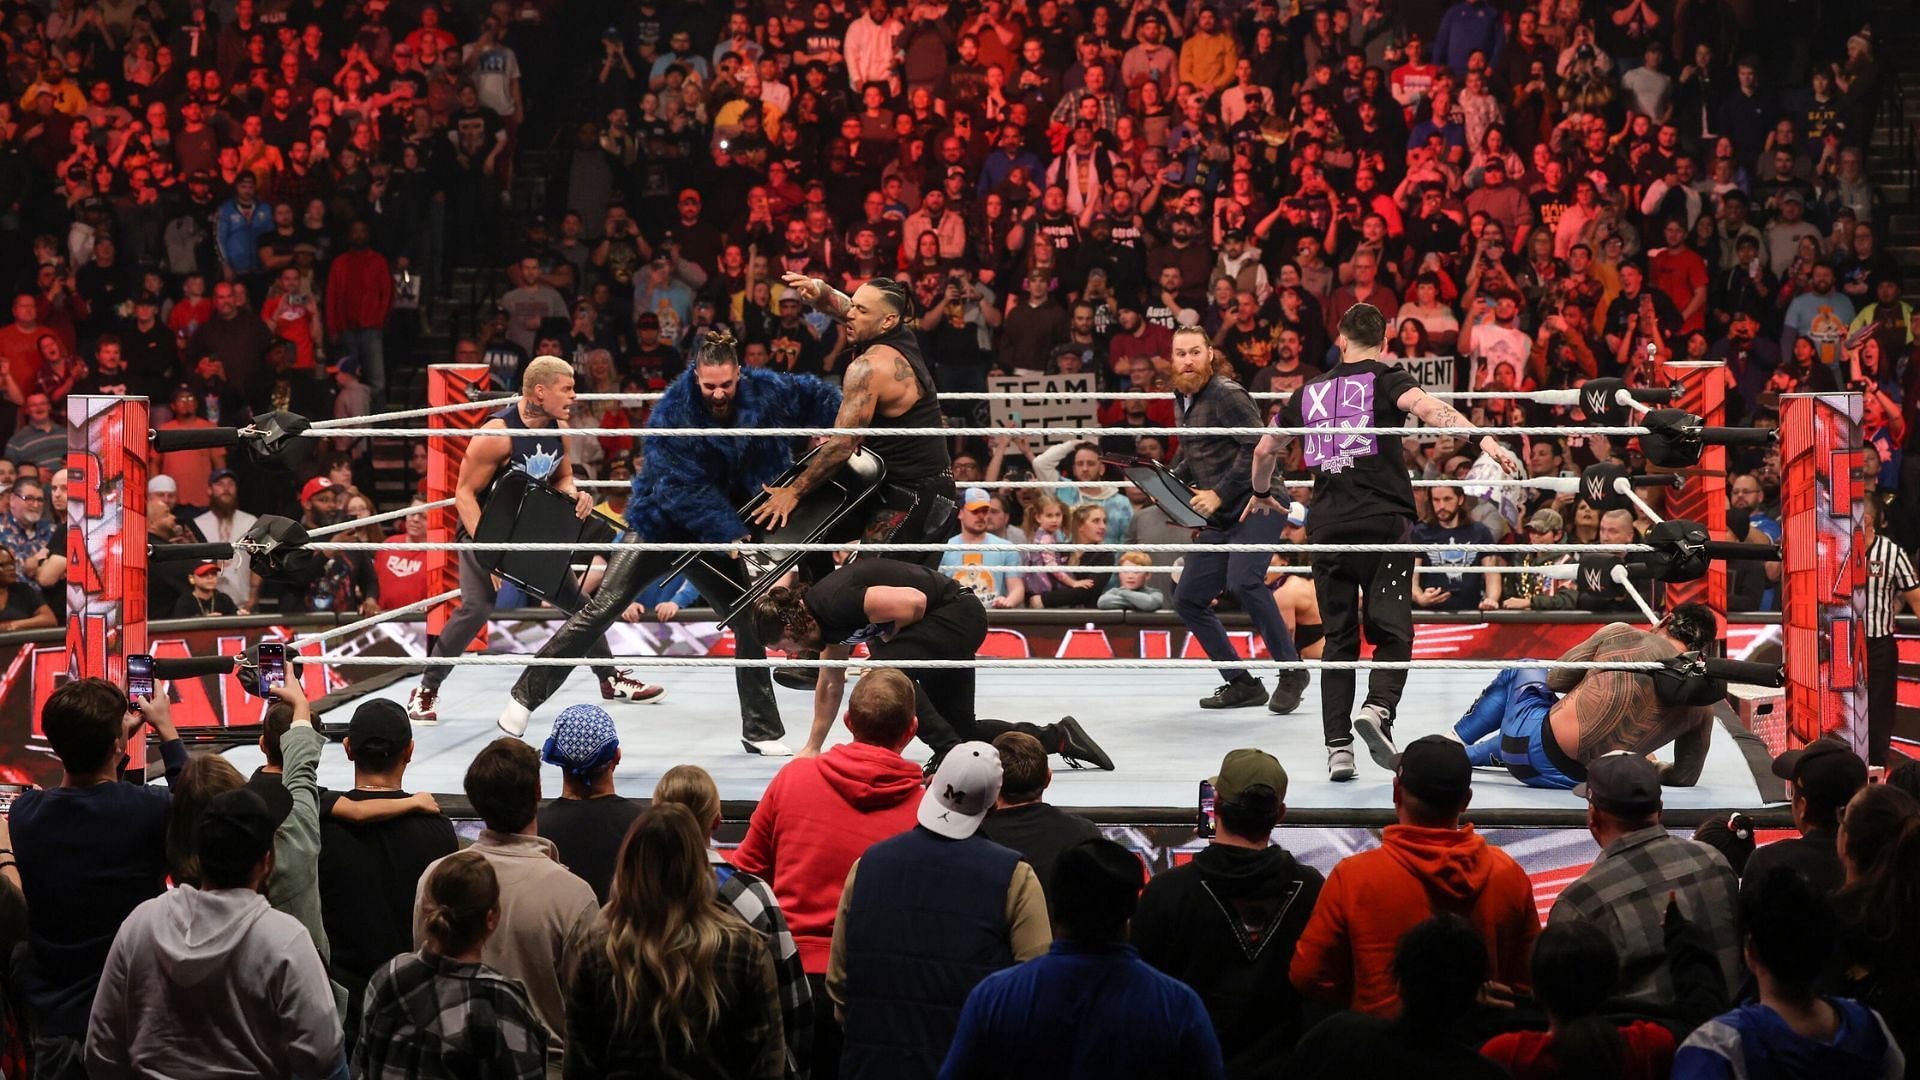 38yearold breaks silence ahead of WWE title match